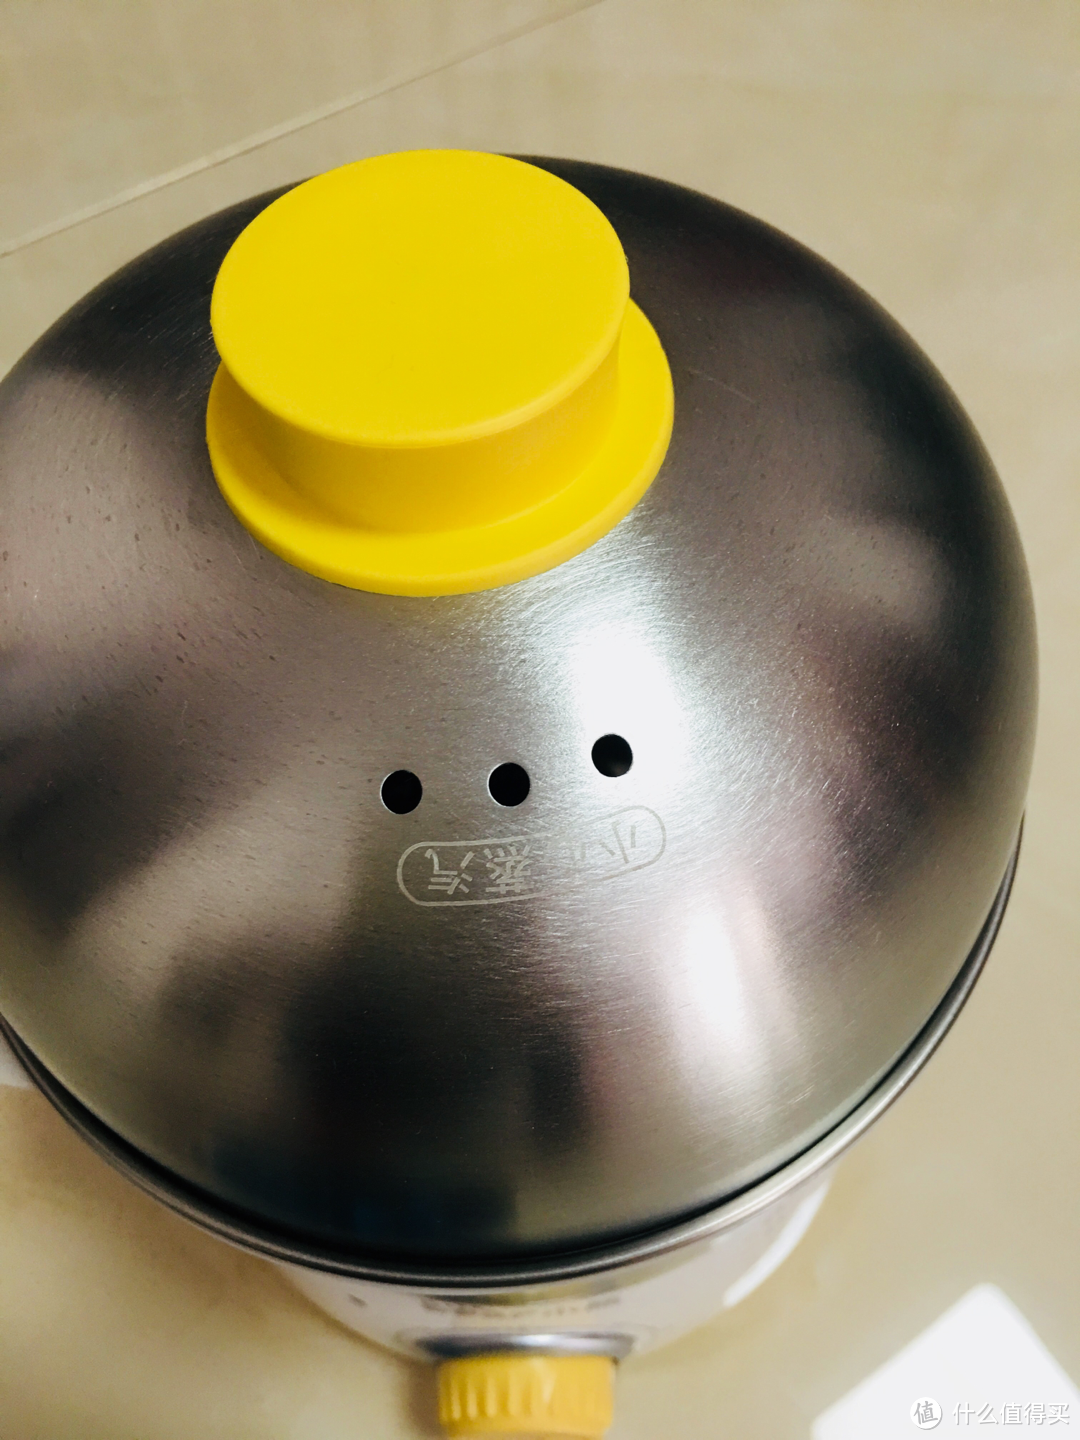 回购最多利用率最高的小家电--小熊煮蛋器